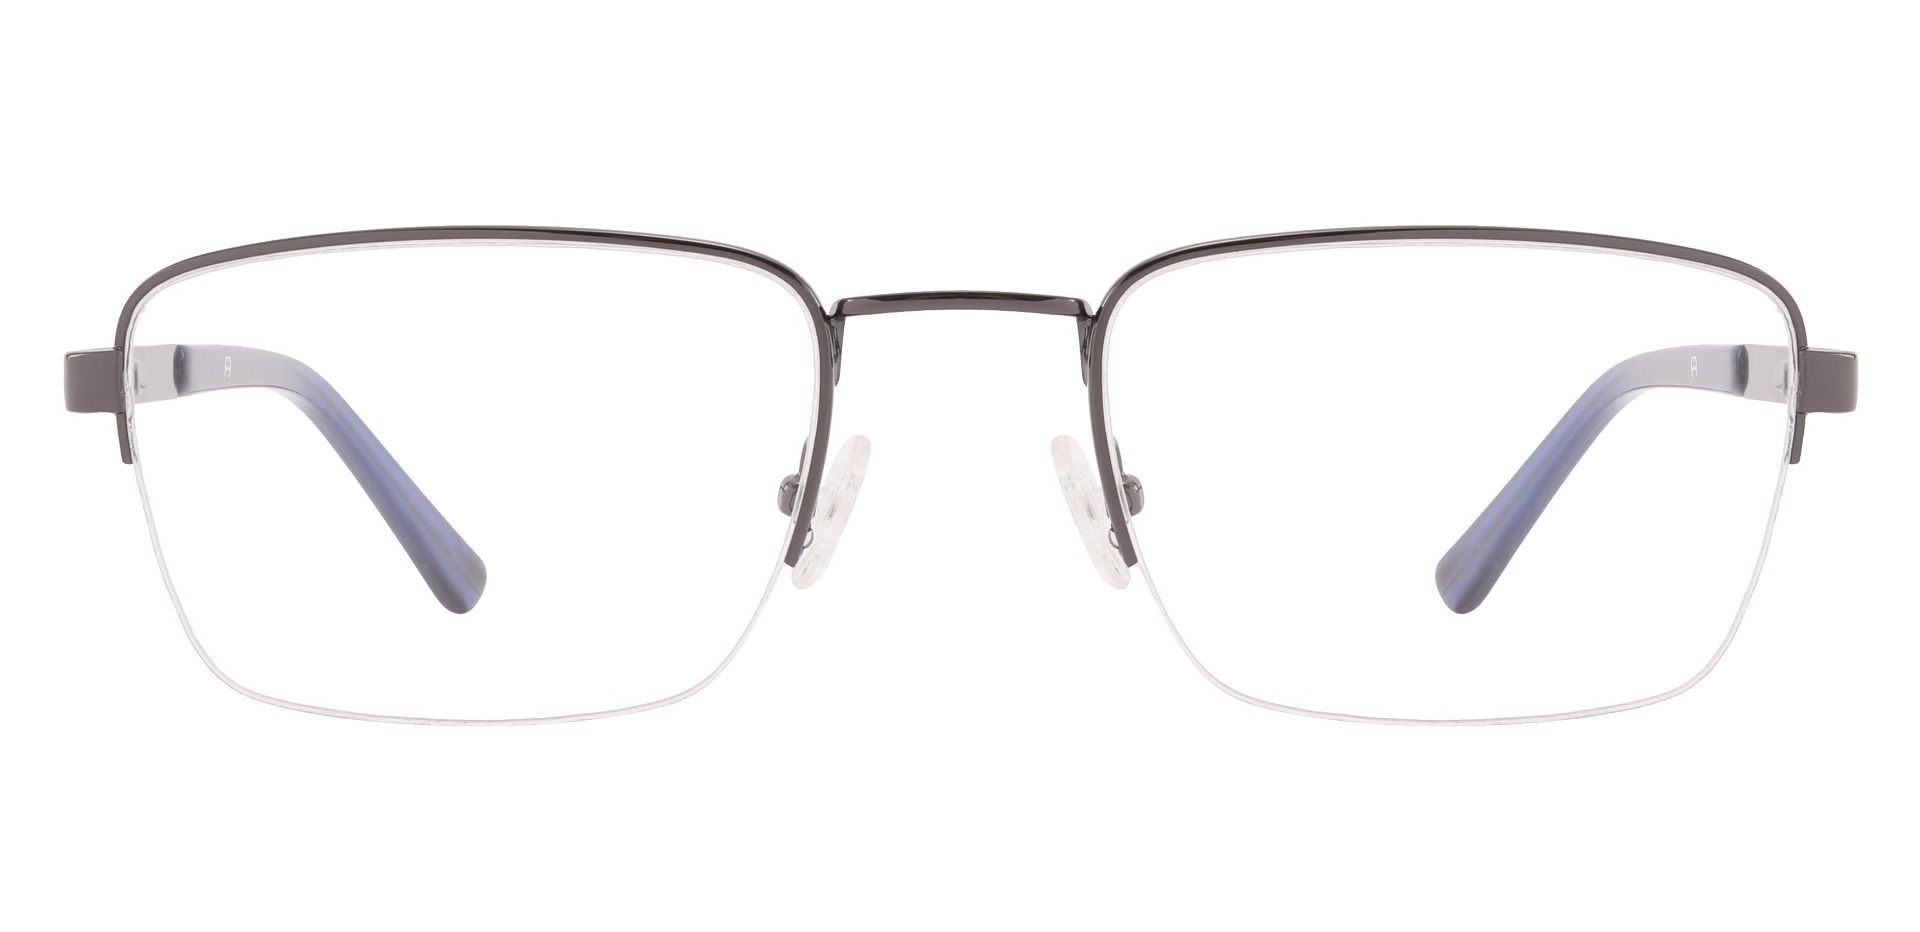 Weston Rectangle Progressive Glasses - Brown